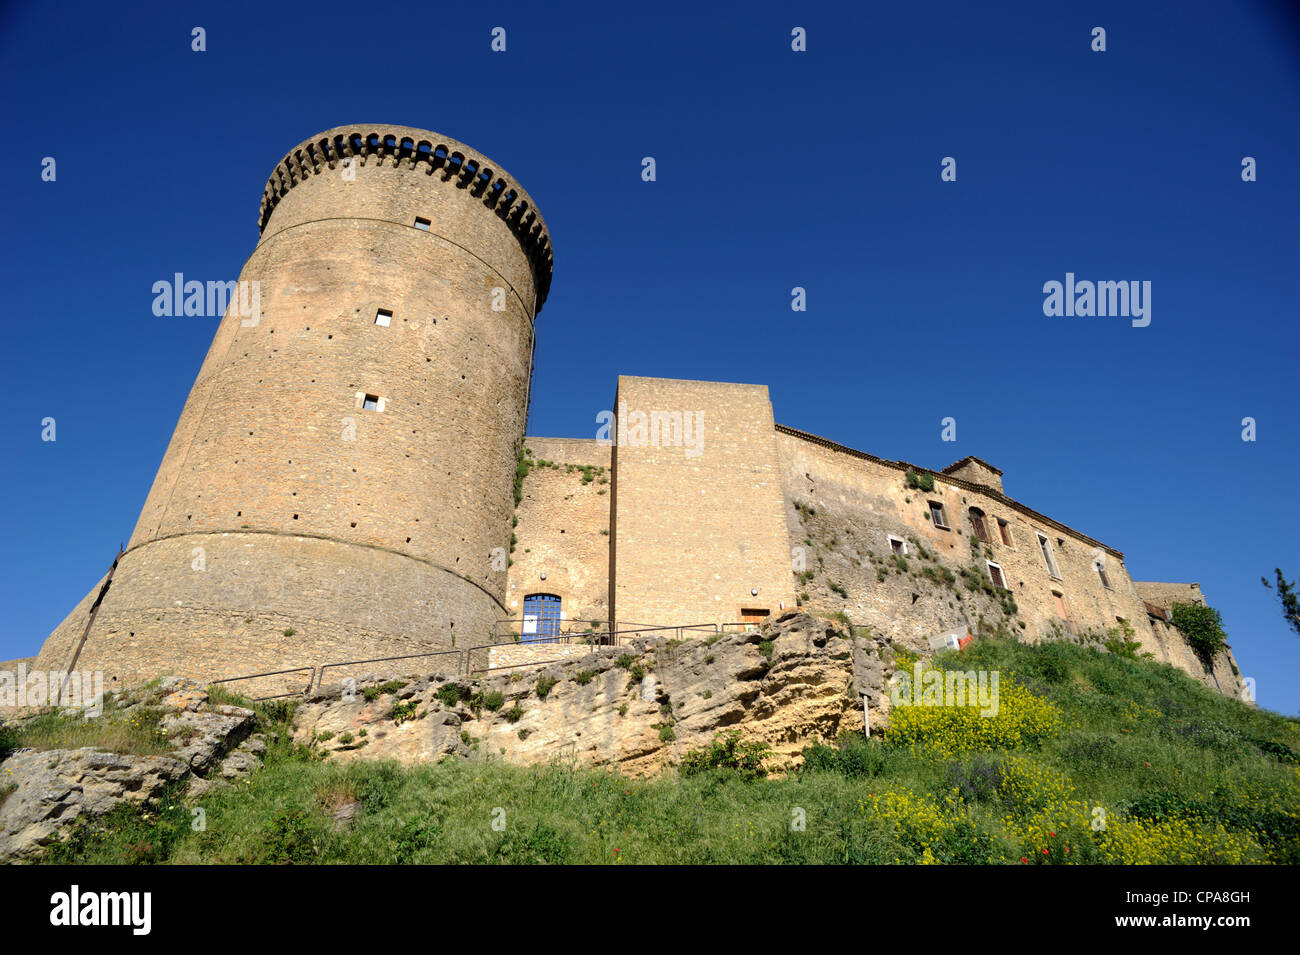 Italia, Basilicata, Tricarico, torre normanna e convento di Santa chiara Foto Stock